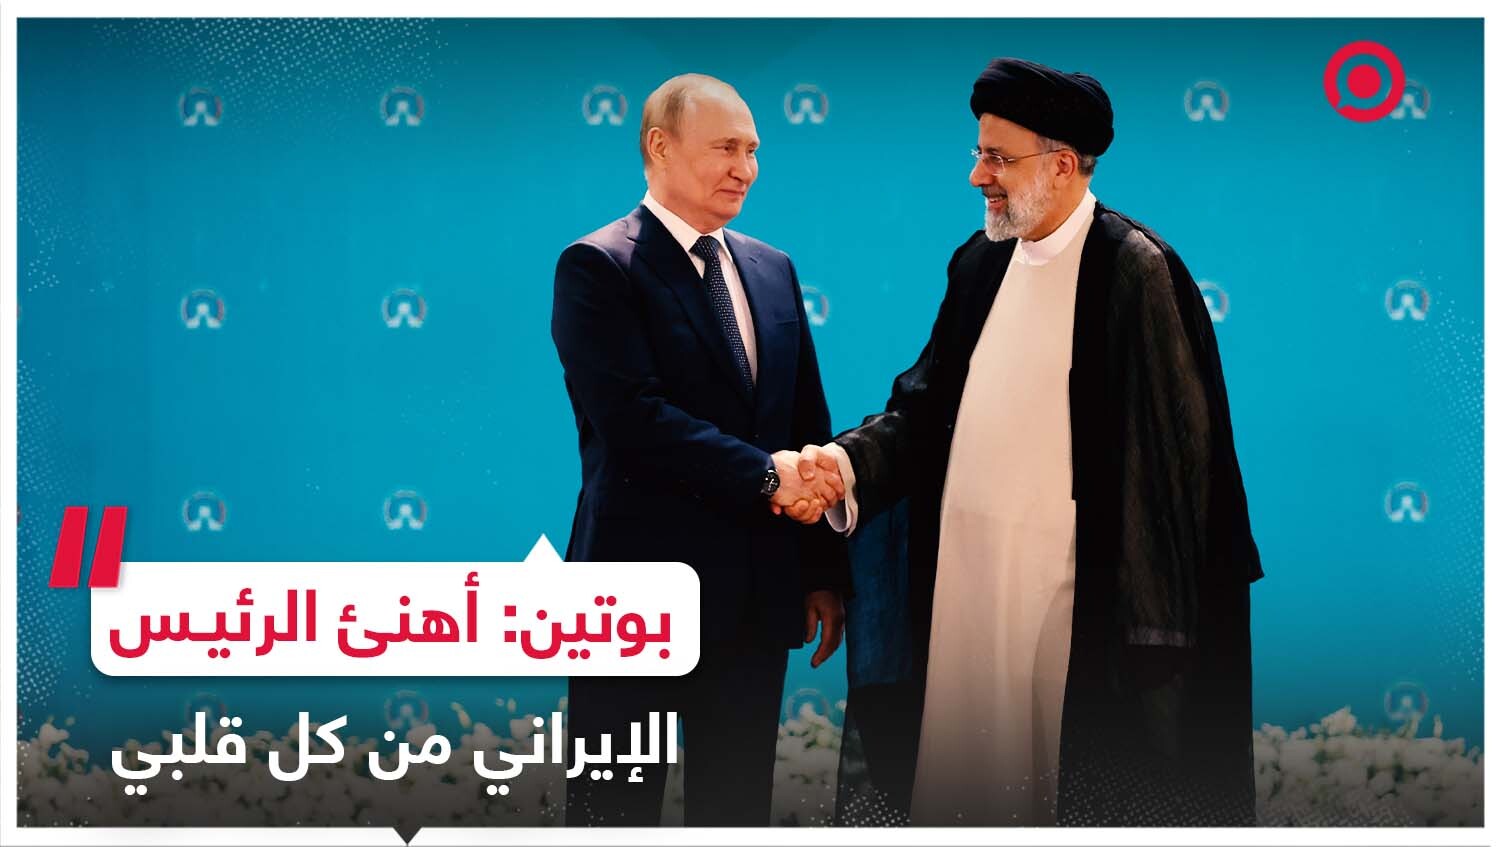 بوتين يهنئ رئيسي بانضمام إيران إلى منظمة شنغهاي للتعاون